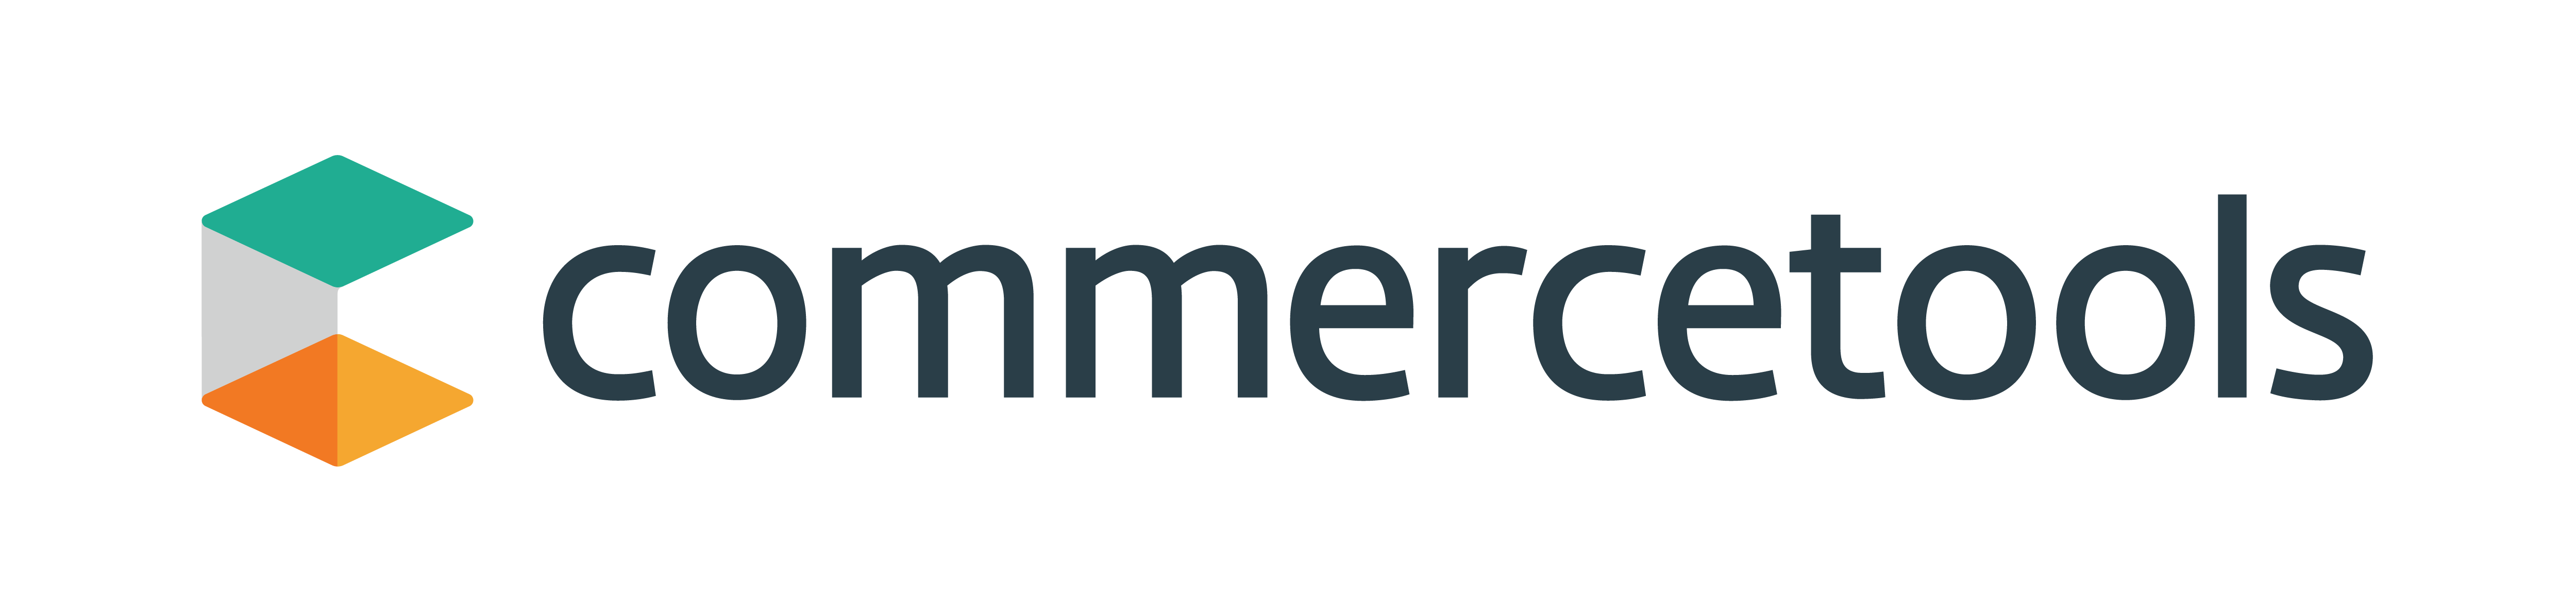 Logotipo de commercetools